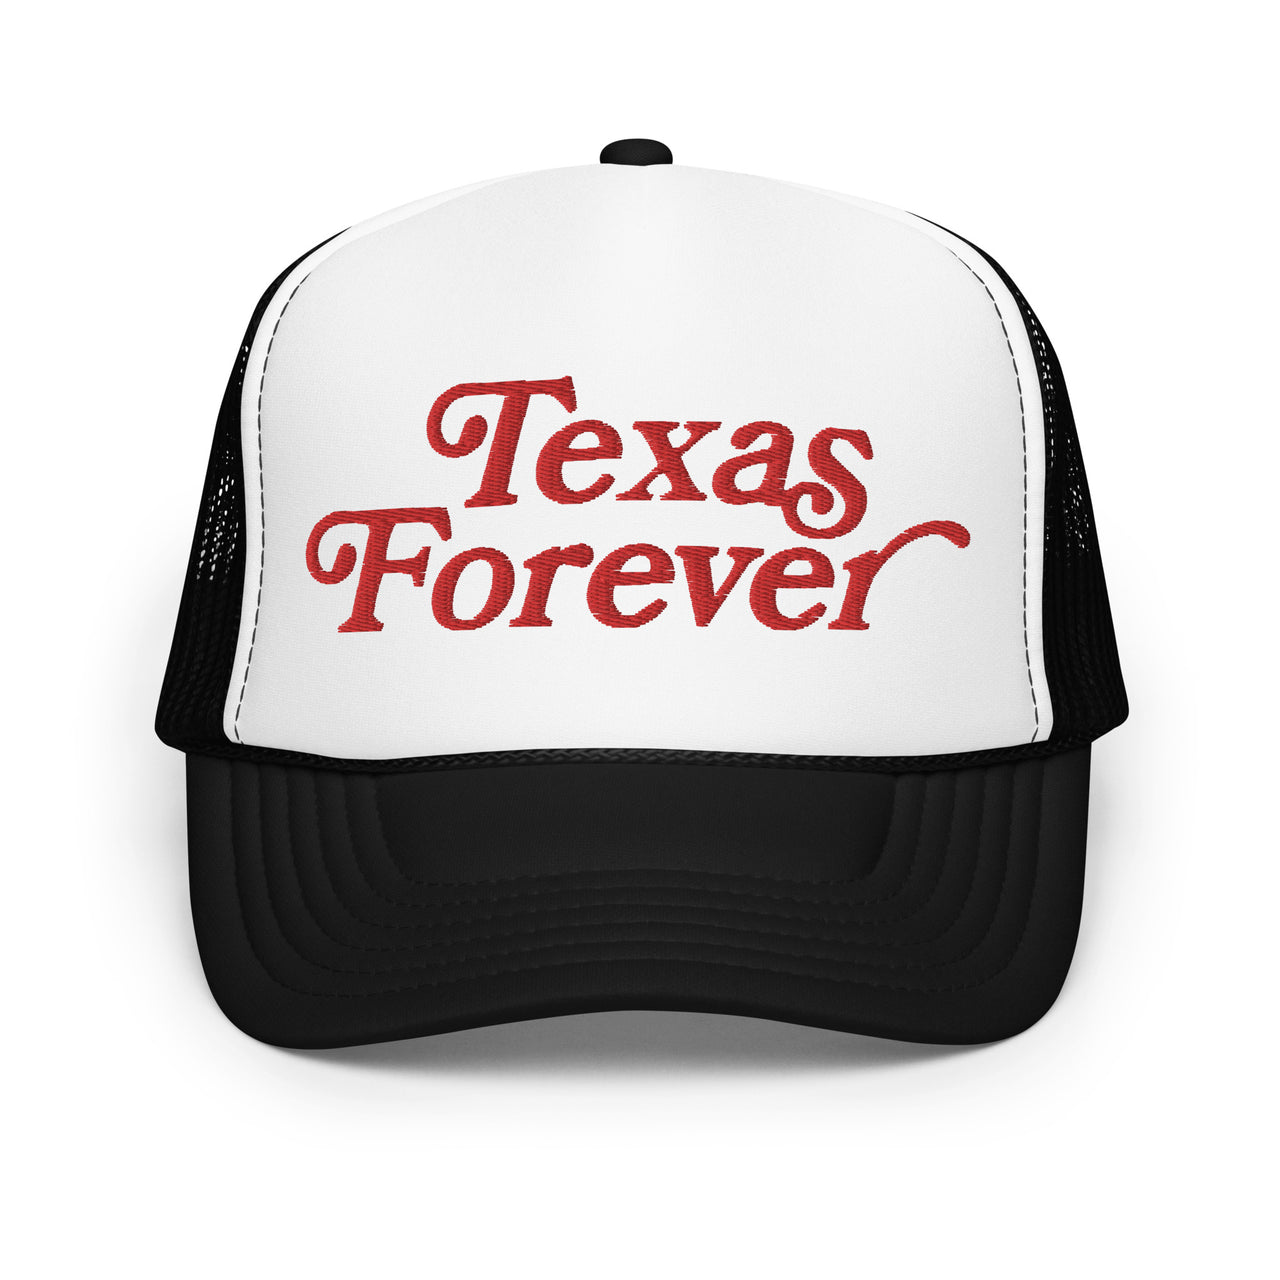 texas forever trucker hat